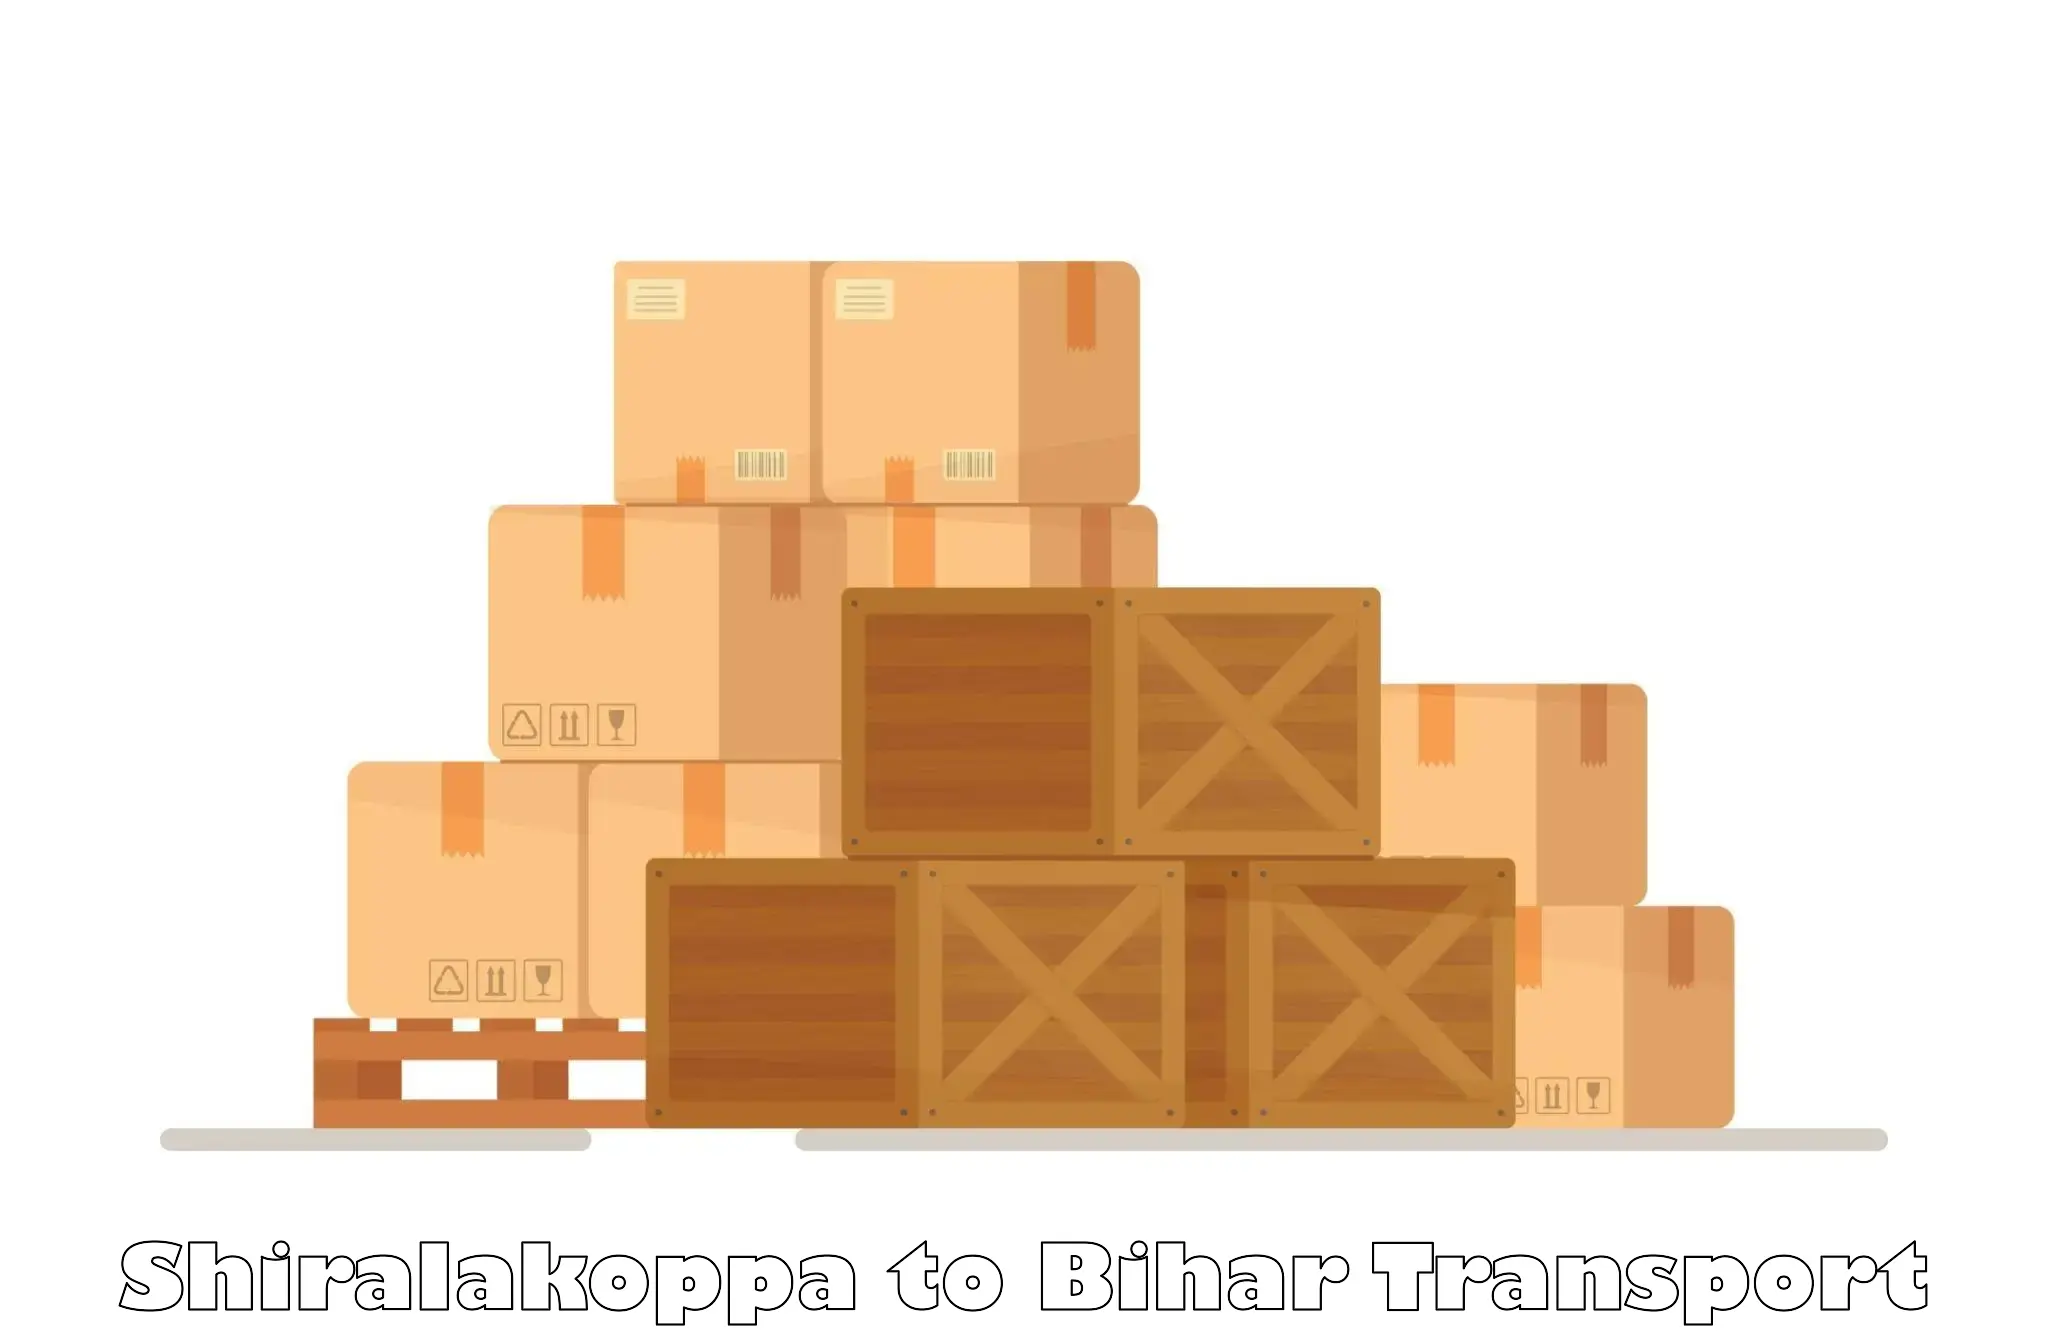 Shipping partner Shiralakoppa to Patna